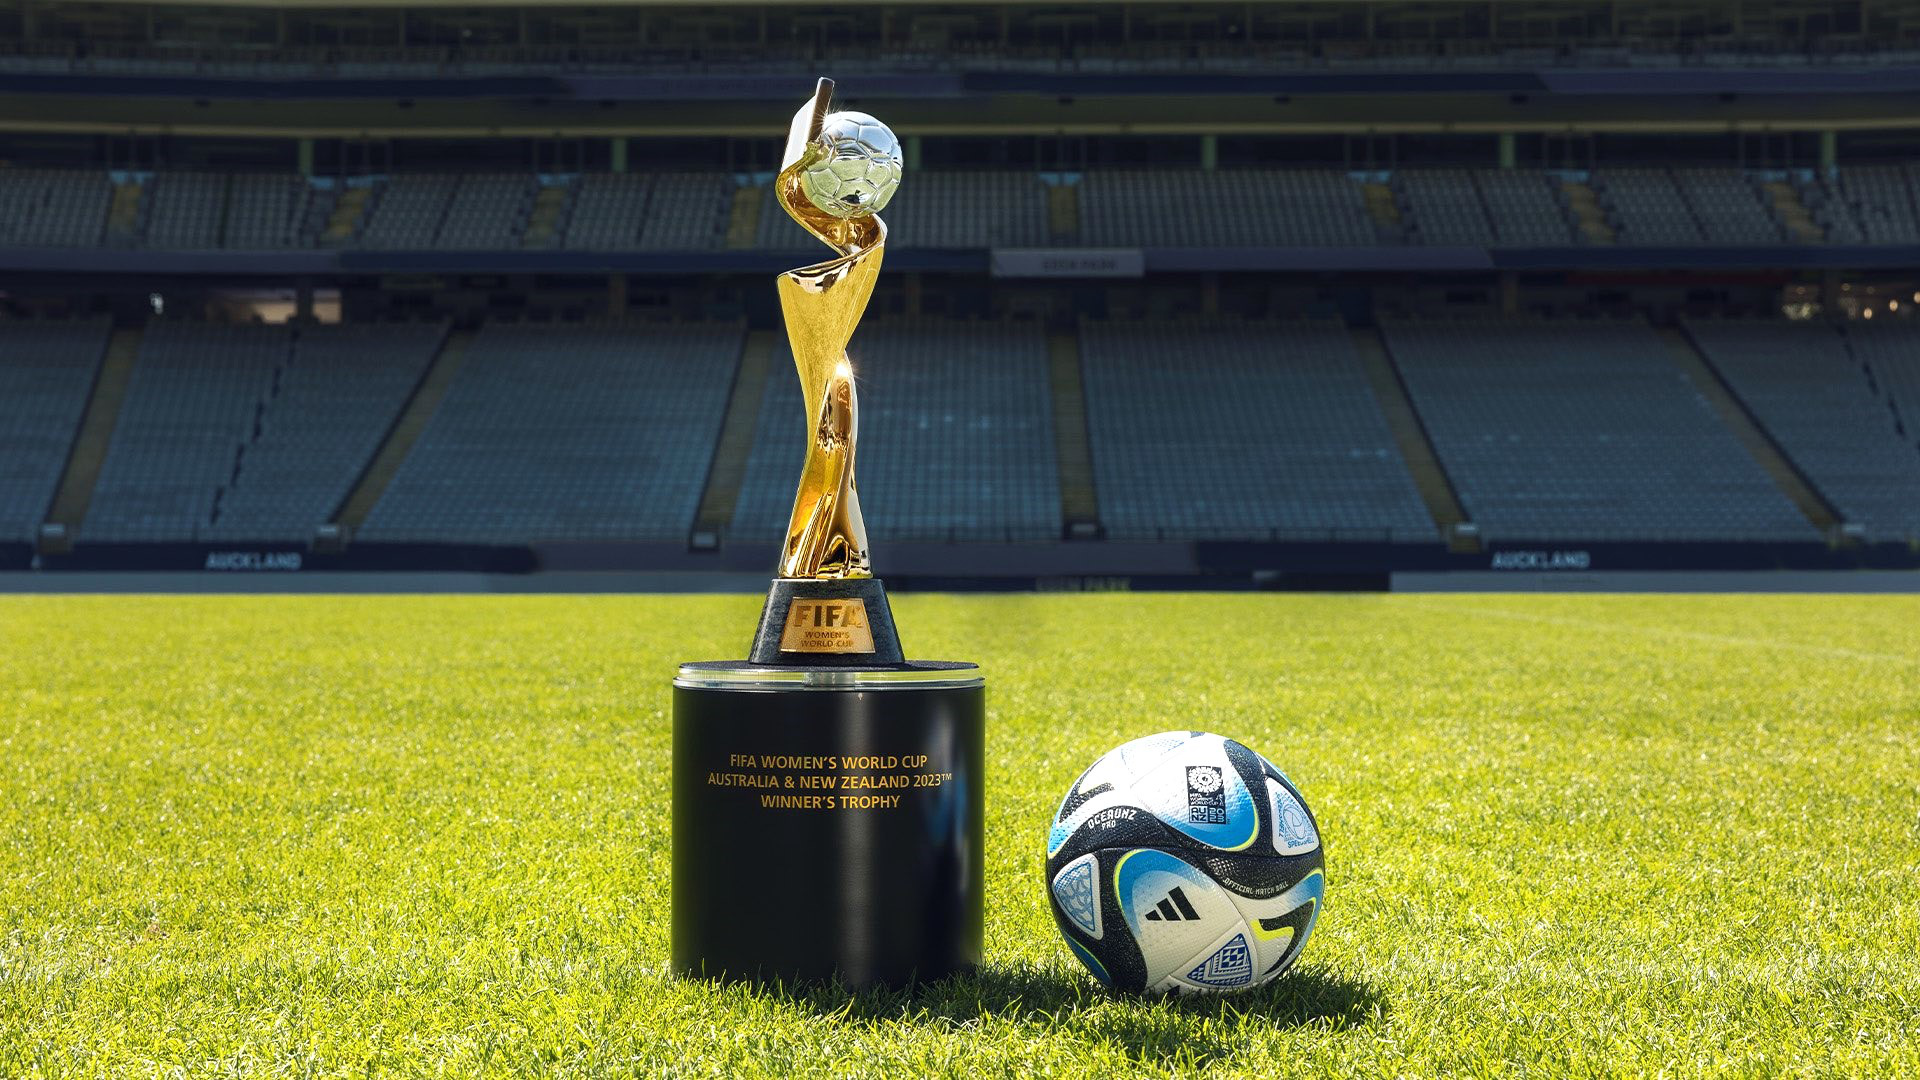 FIFA Women’s World Cup trophy set to arrive in Vietnam in 2 weeks